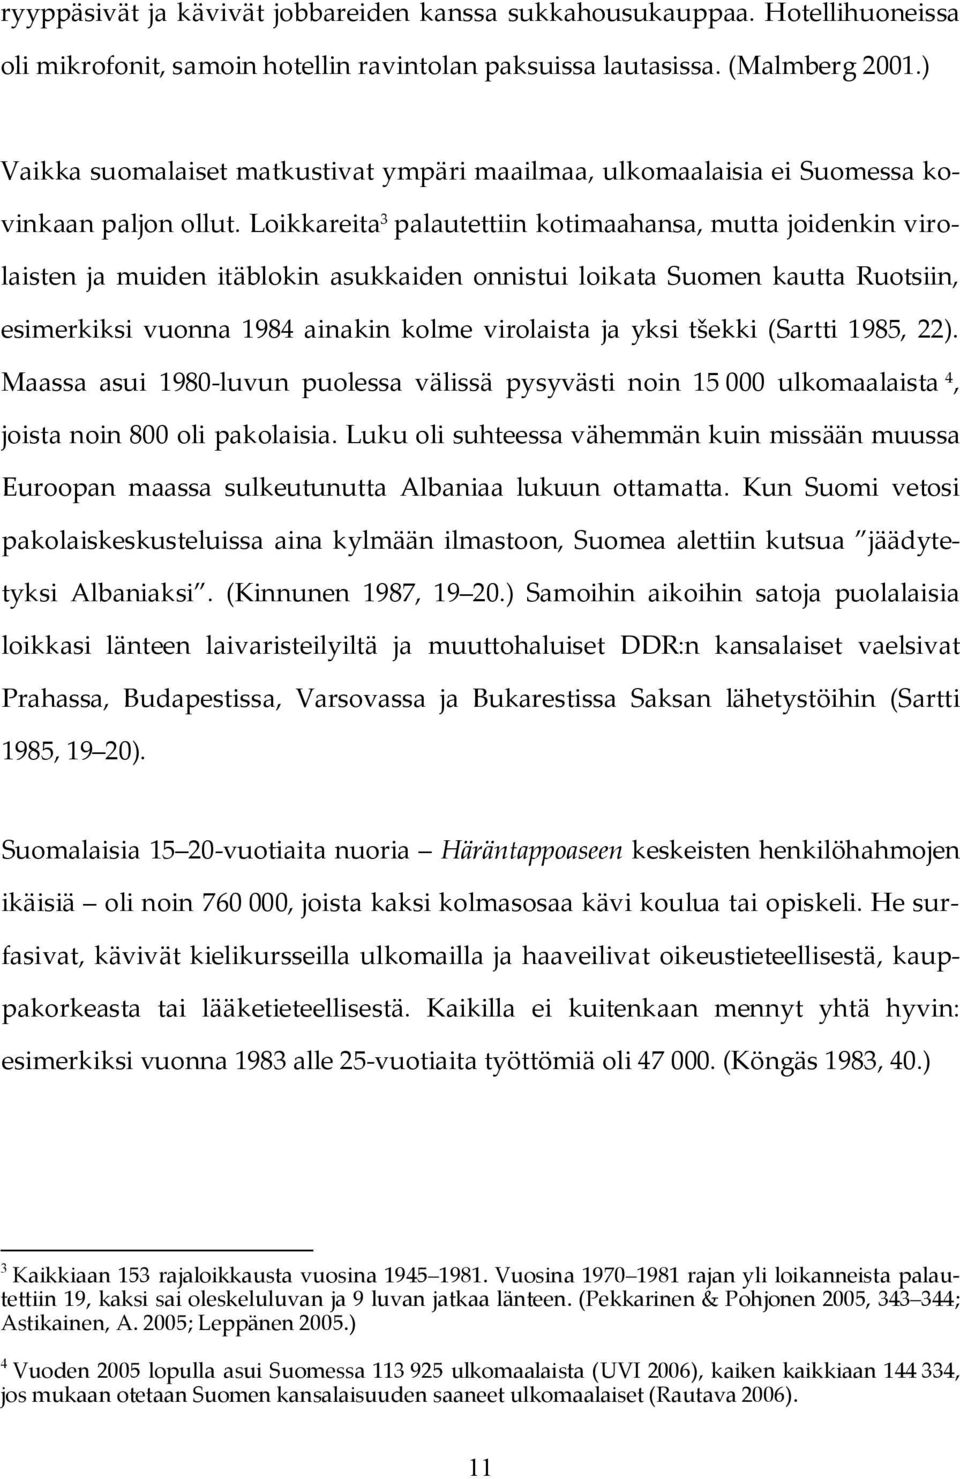 Loikkareita 3 palautettiin kotimaahansa, mutta joidenkin virolaisten ja muiden itäblokin asukkaiden onnistui loikata Suomen kautta Ruotsiin, esimerkiksi vuonna 1984 ainakin kolme virolaista ja yksi